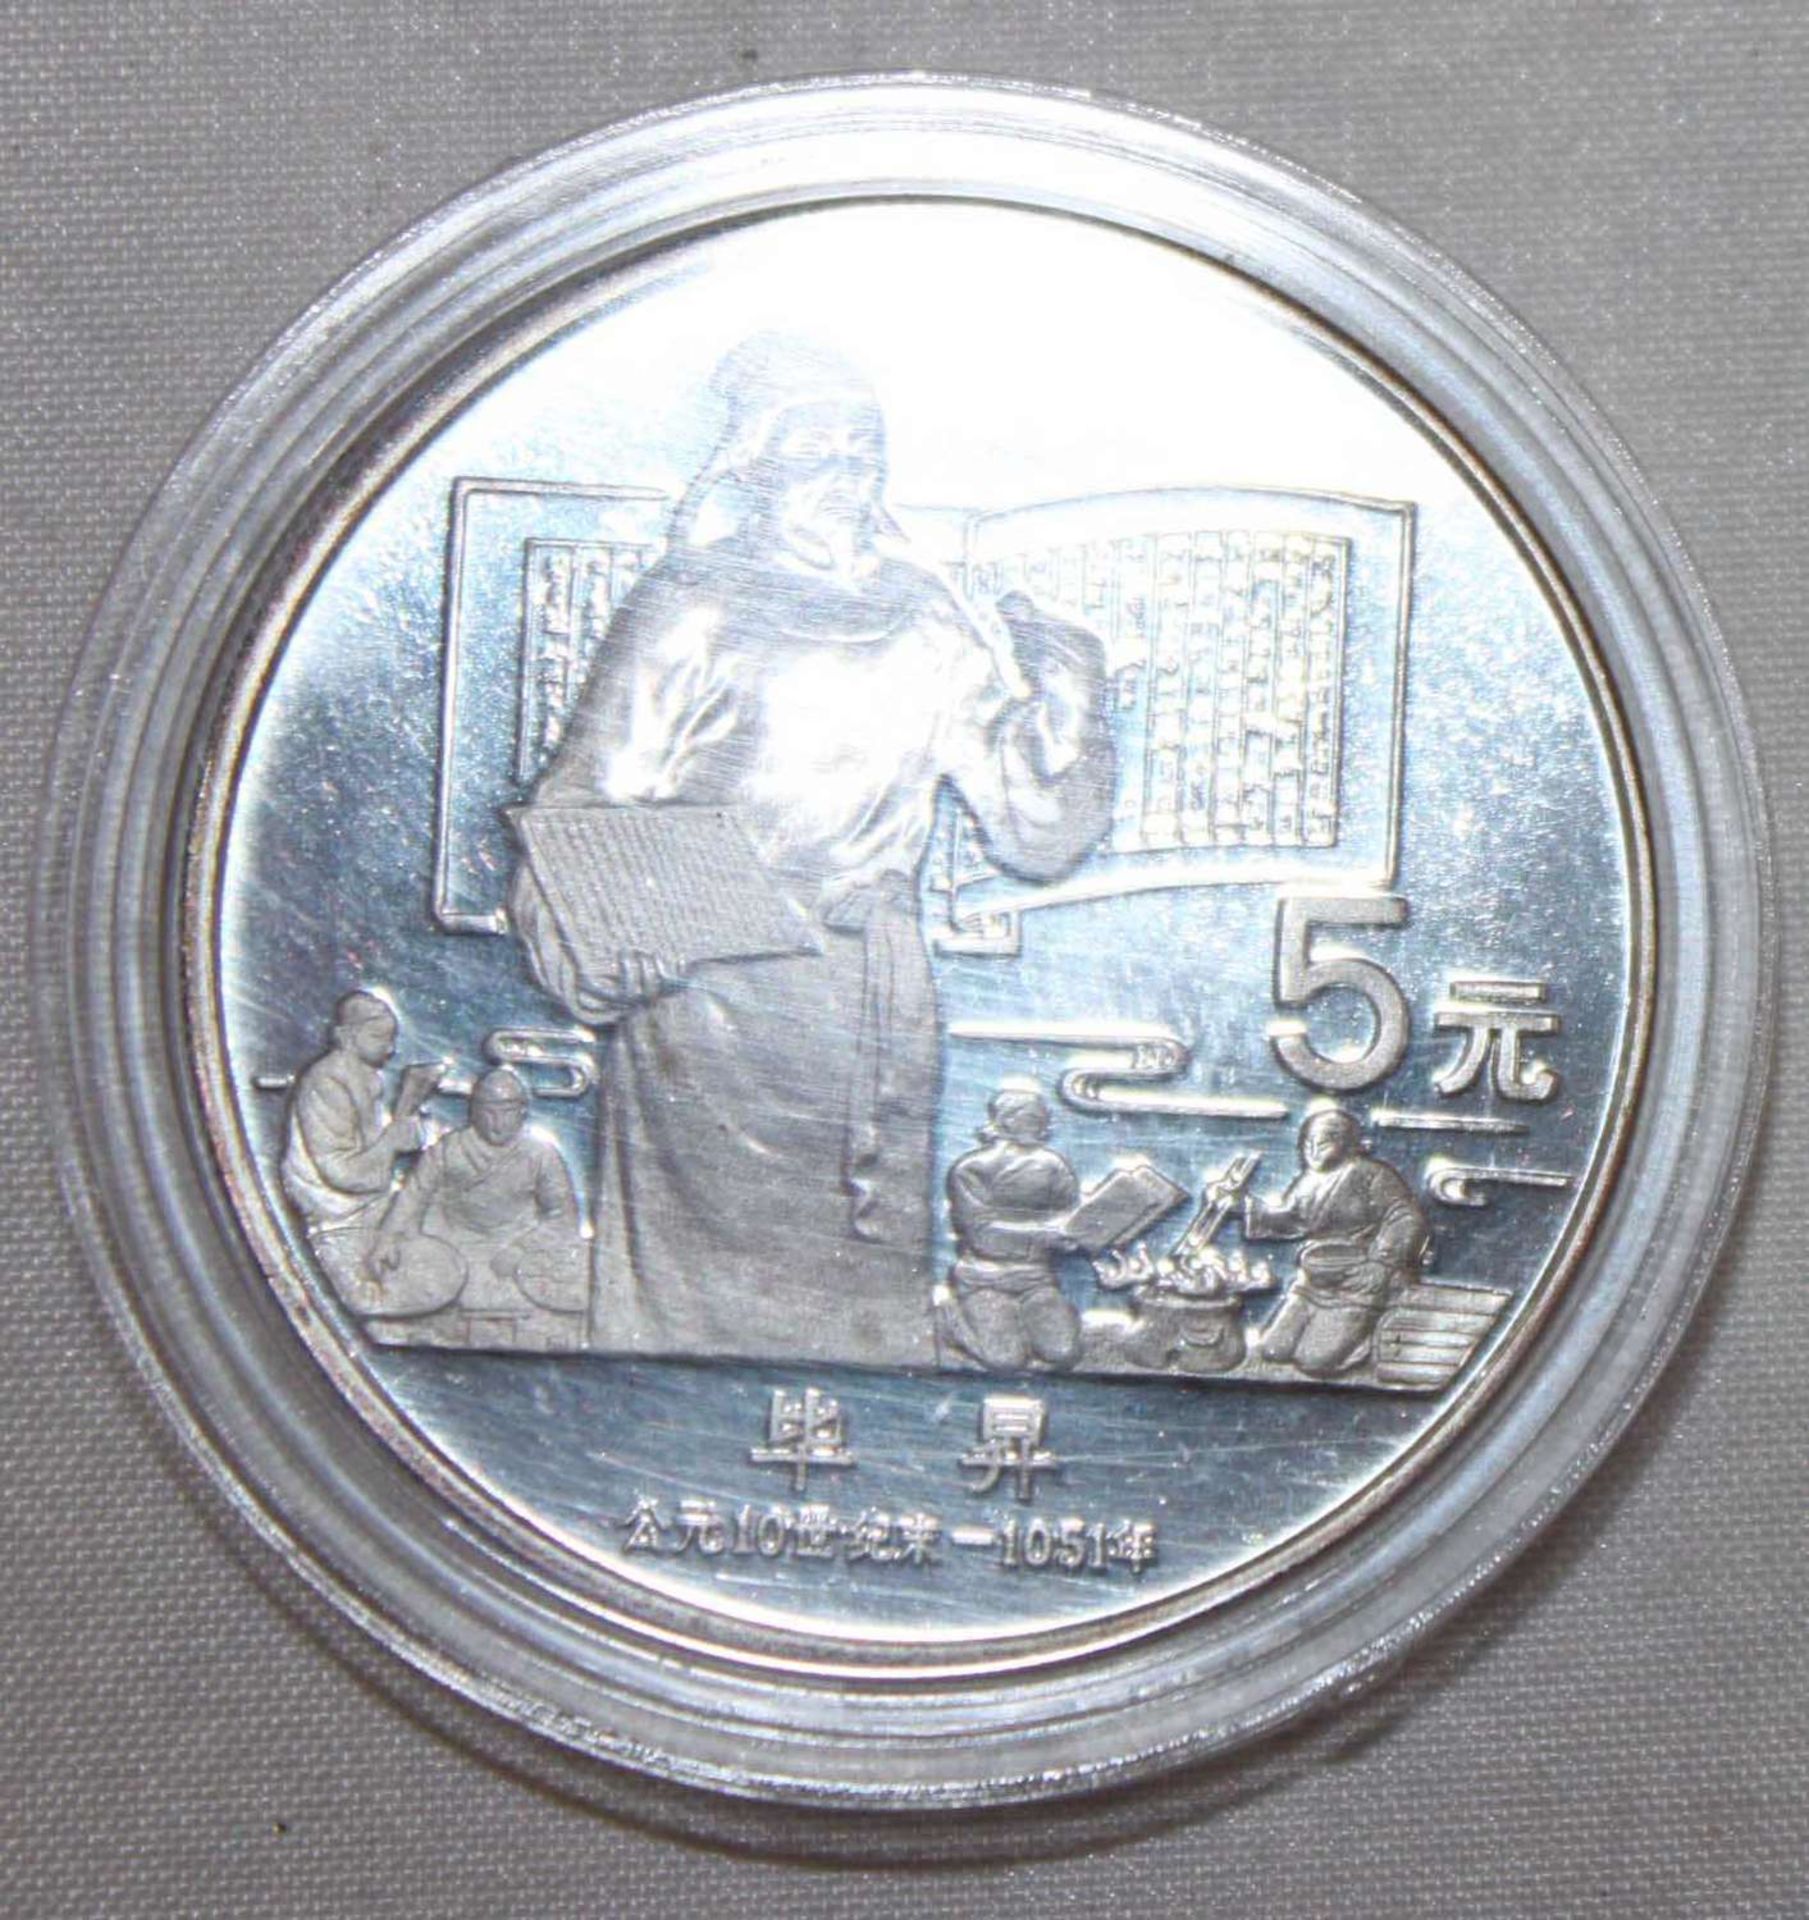 China 1987, 5 Yuan - Silbermünze "Bi Sheng". Silber 900. Gewicht: 22,2 gr.. In Kapsel. Erhaltung: